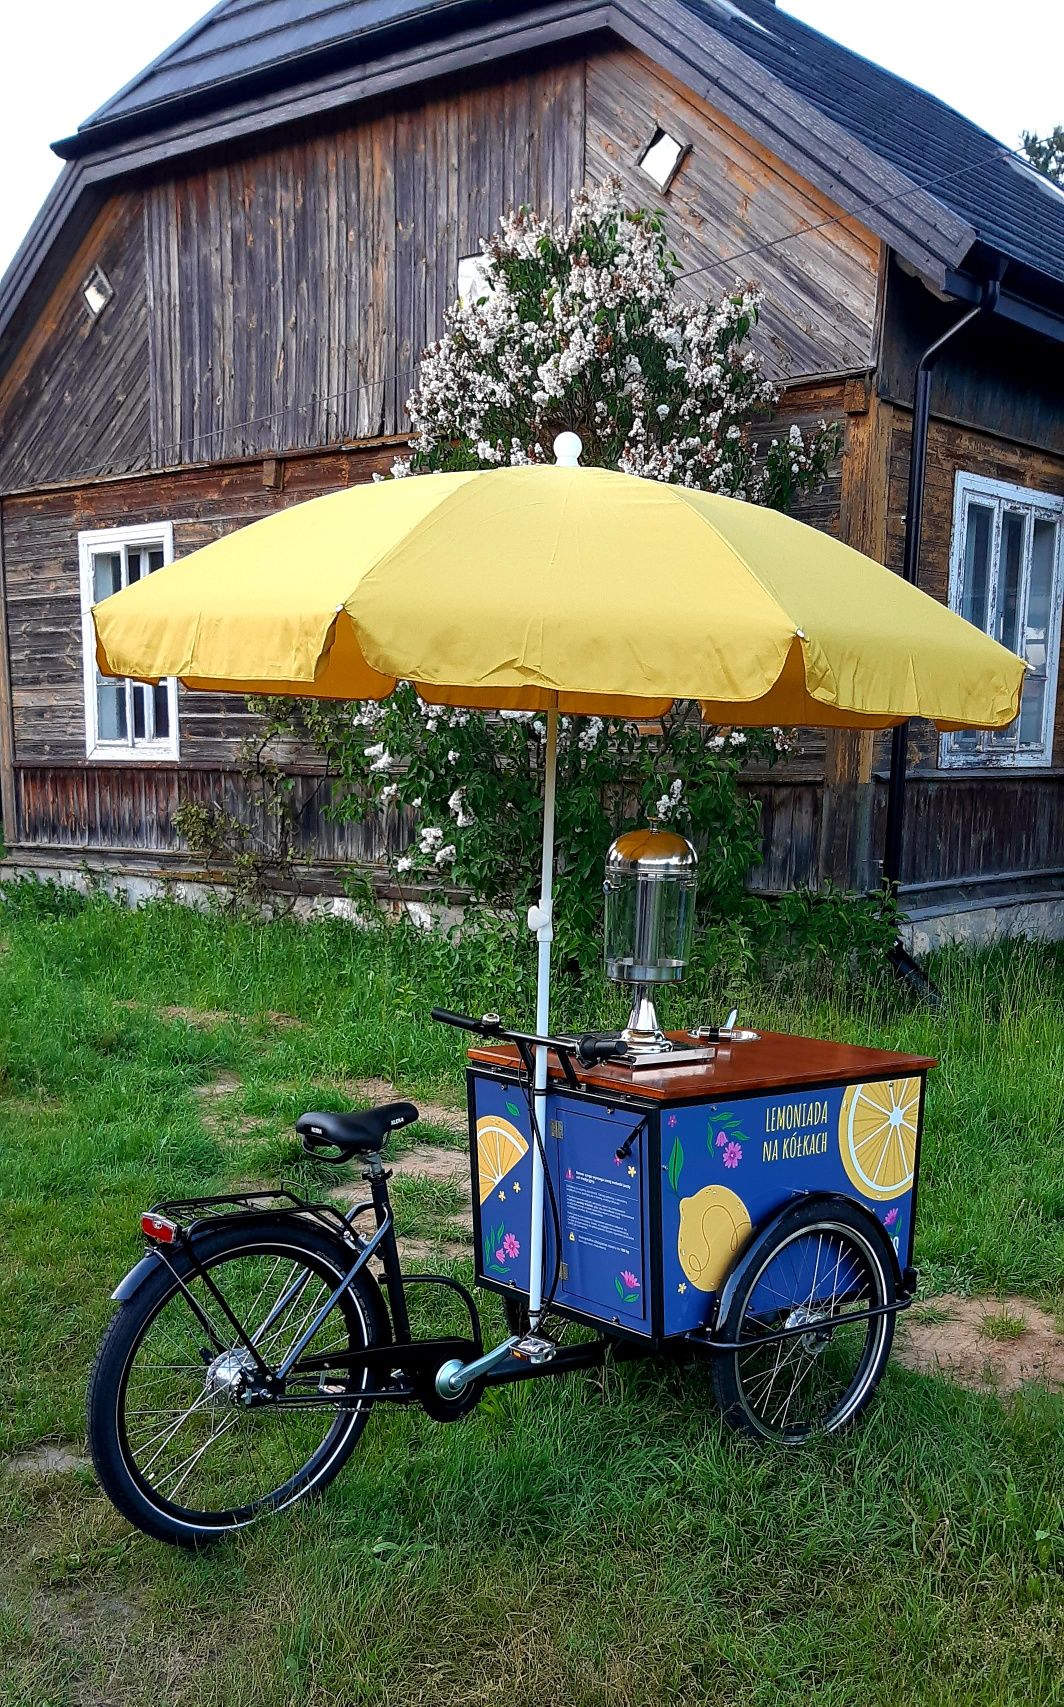 Riksza do Lemoniady, rower gastronomiczny "Lemoniada na kołach"